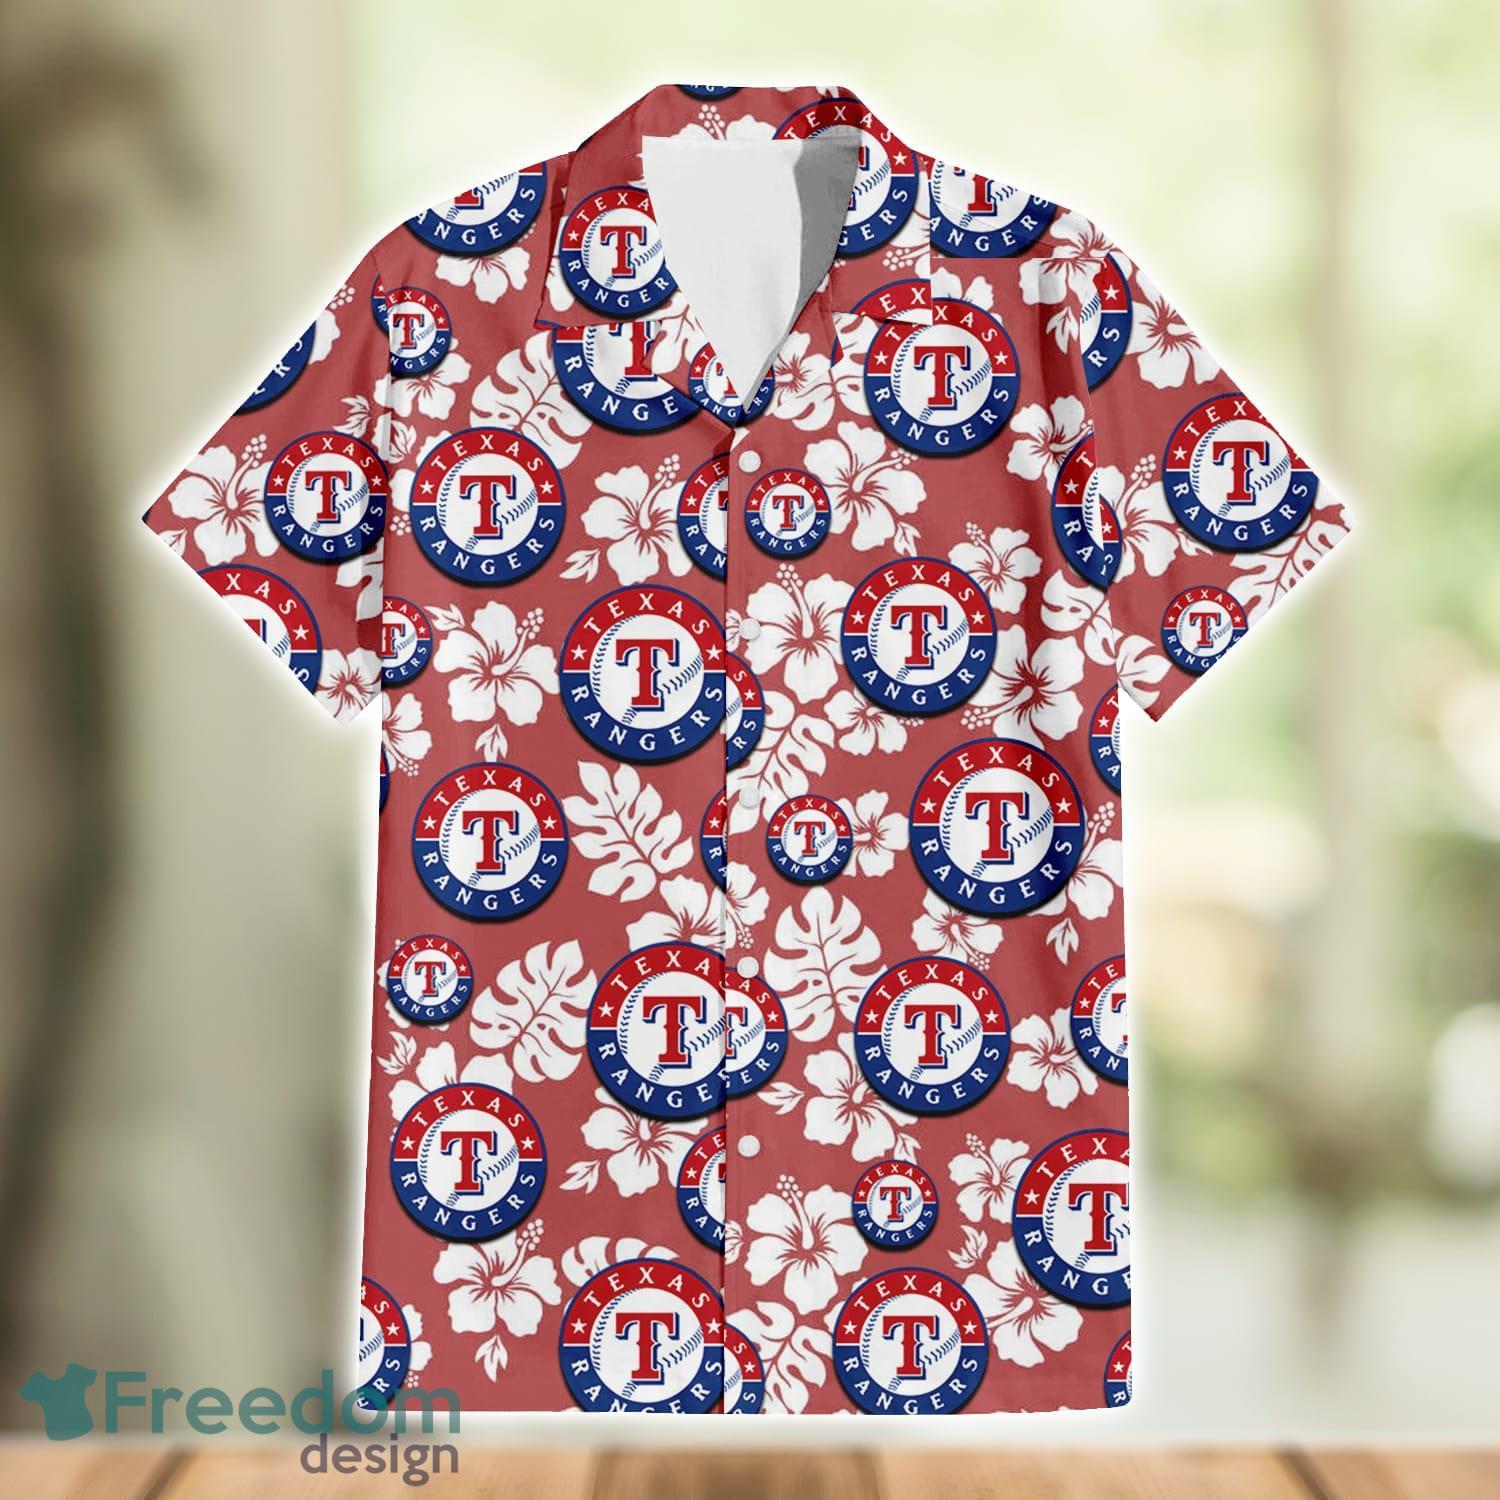 Texas Rangers Yellow White Hibiscus Powder Blue Pattern 3D Hawaiian Shirt  Beach Gift - Freedomdesign